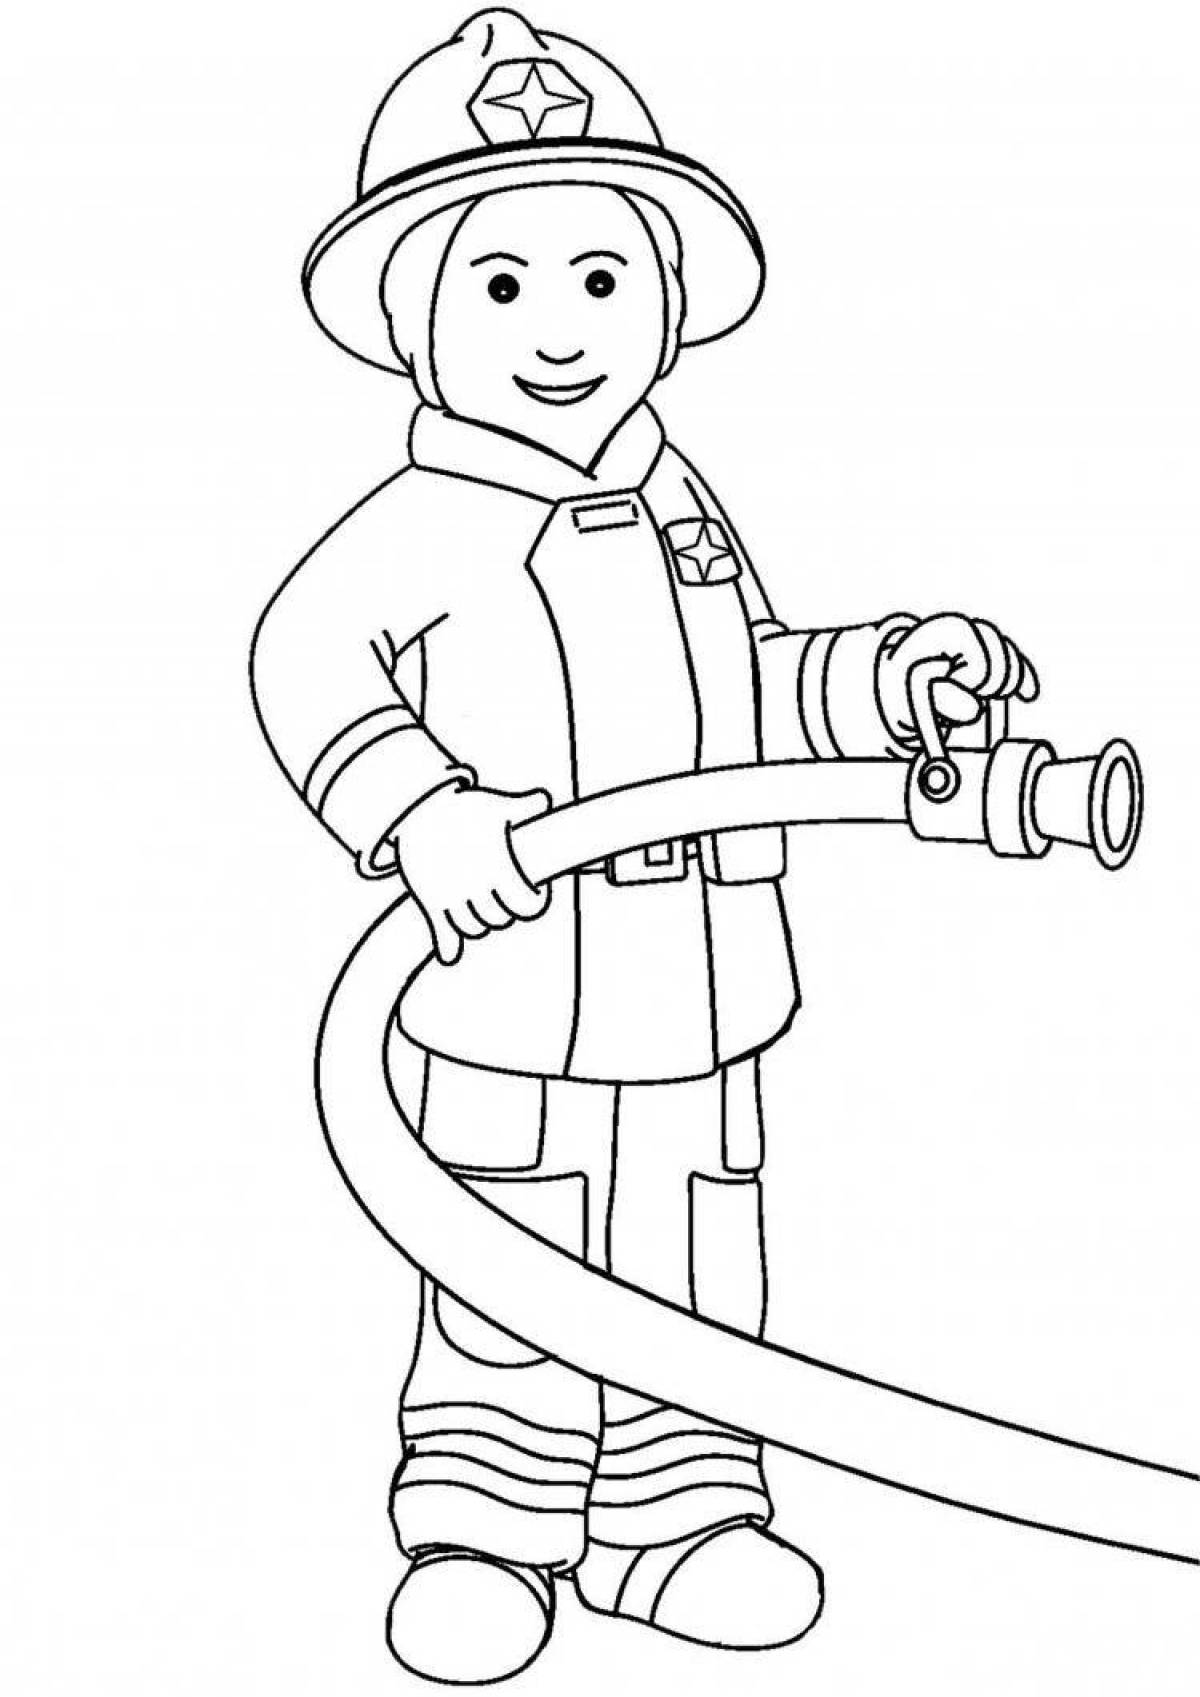 Раскраска для малышей профессии пожарник